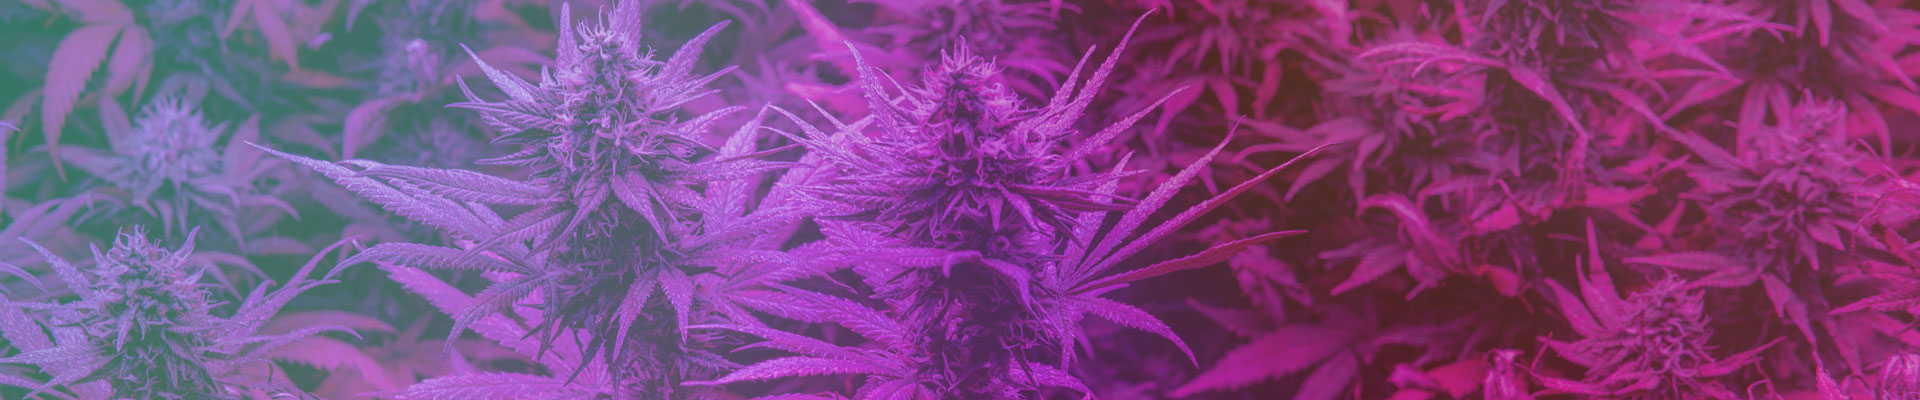 Terpene in Cannabis und CBD